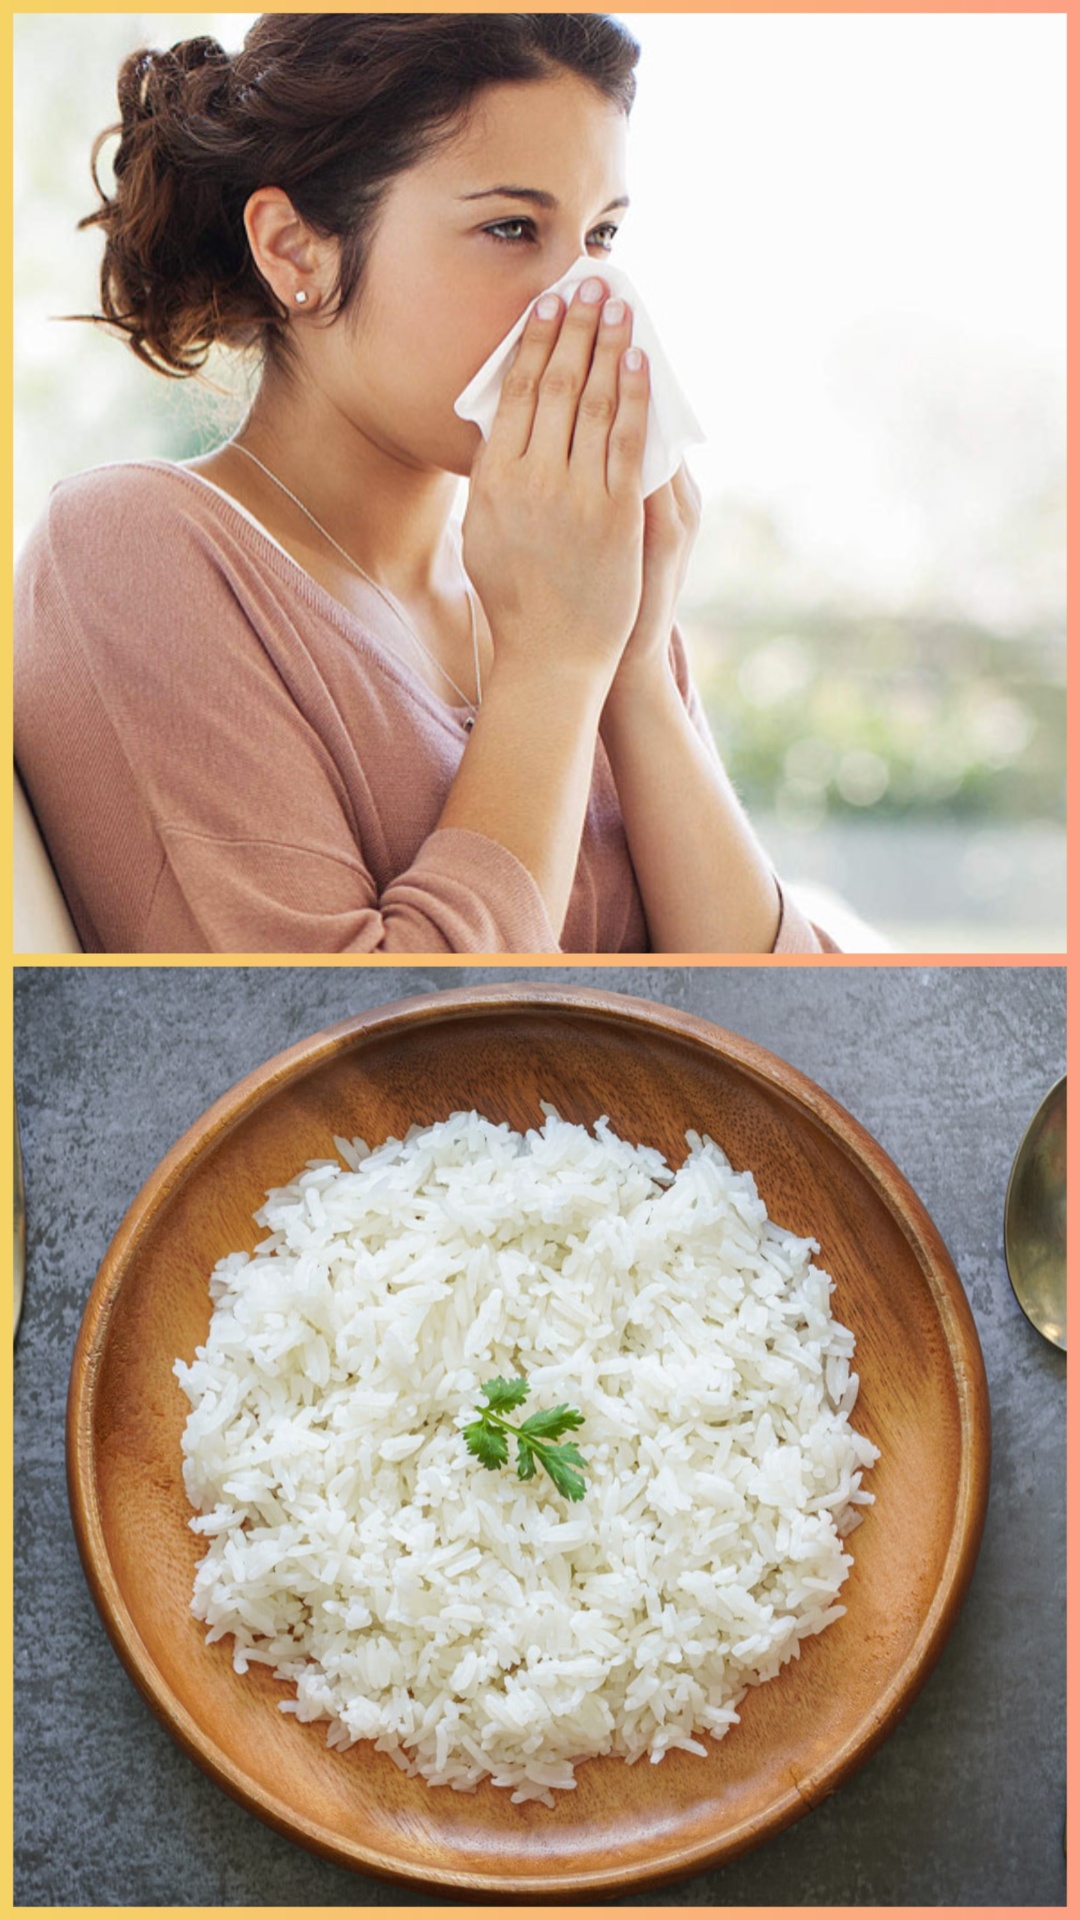 सर्दी-जुकाम में चावल खाना चाहिए या नहीं?